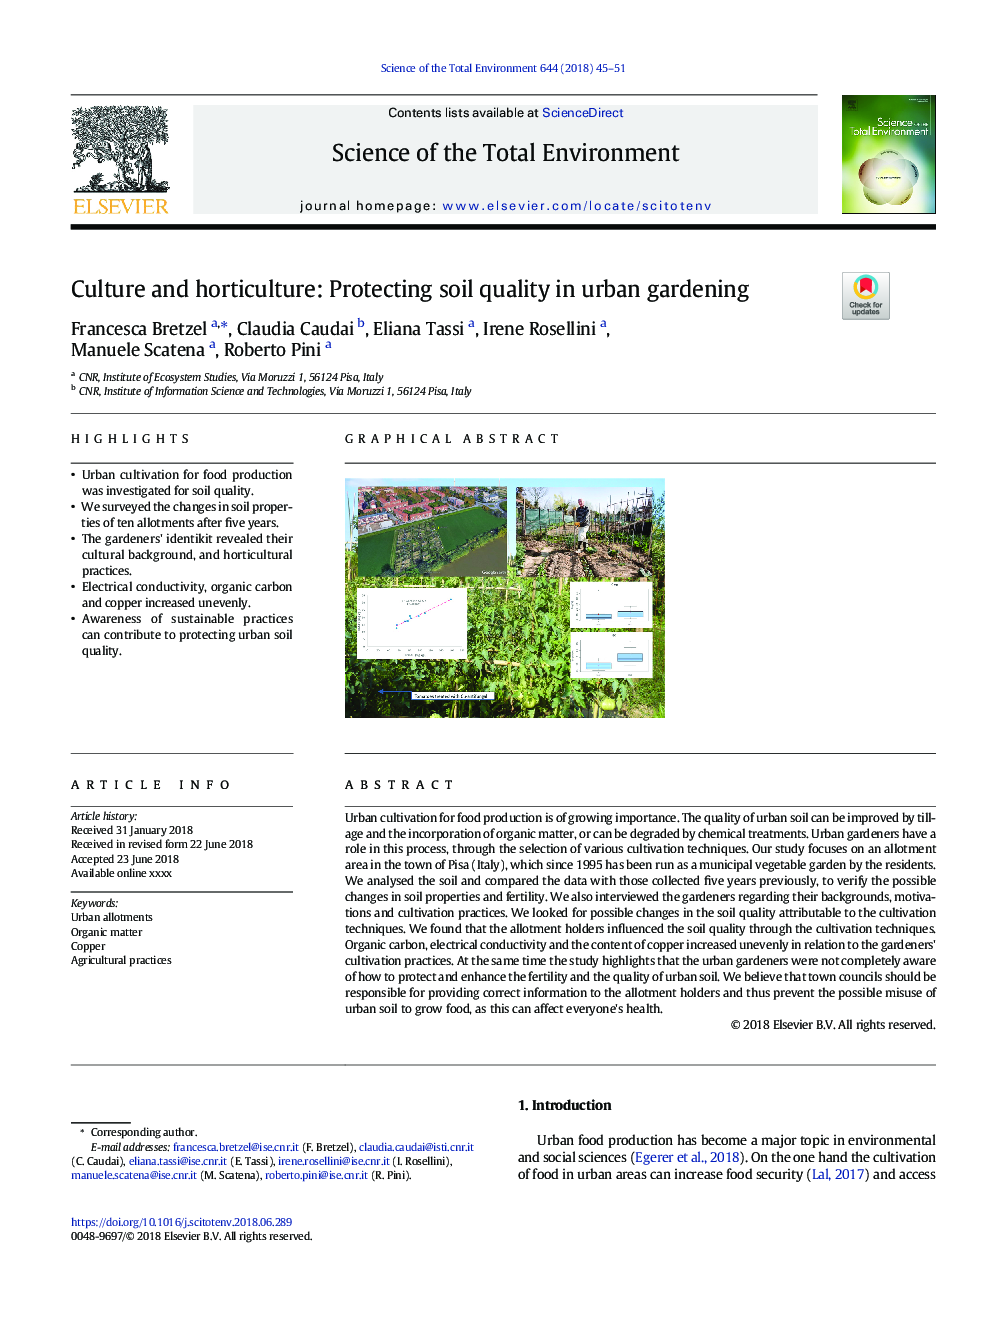 فرهنگ و باغبانی: حفاظت از کیفیت خاک در باغداری شهری 